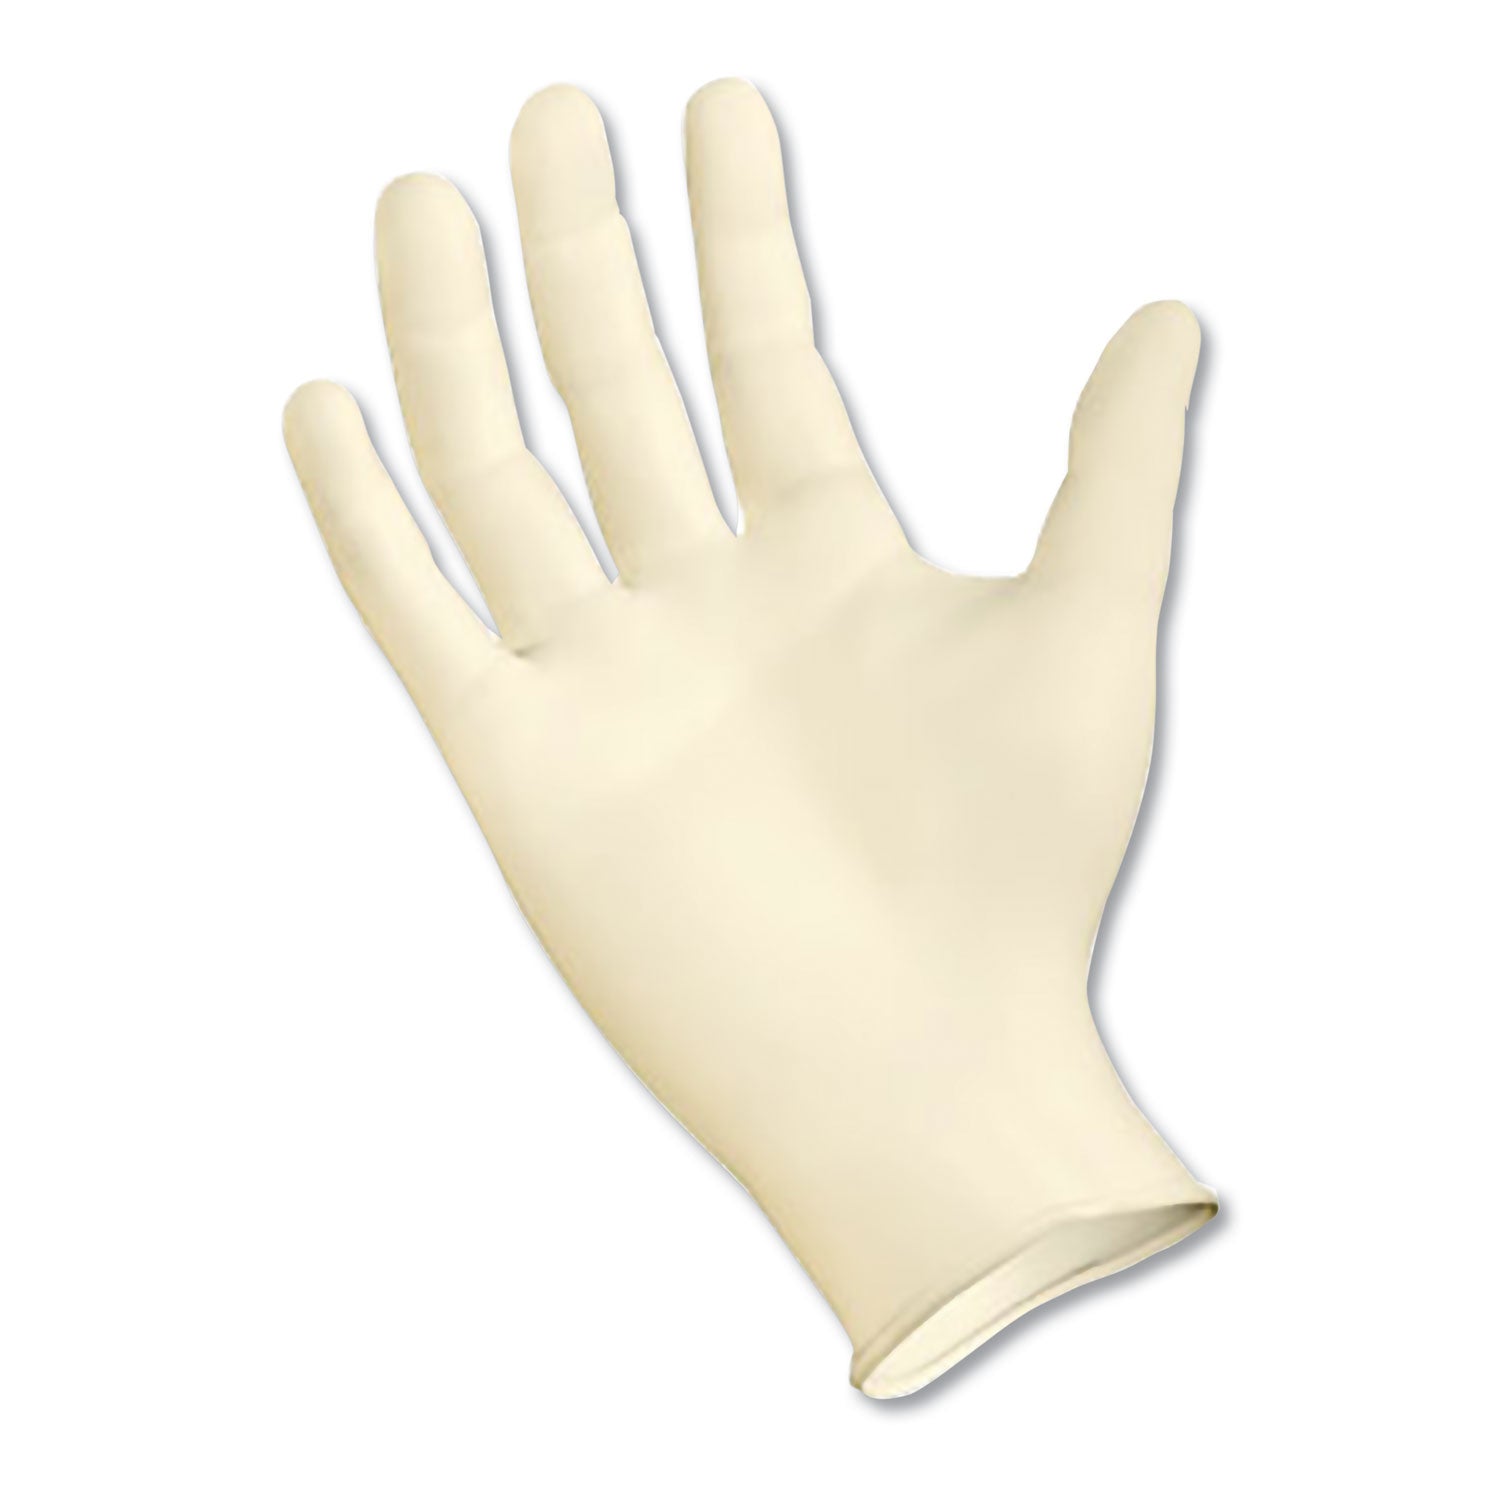 Powder-Free Latex Exam Gloves, Small, Natural, 4 4/5 mil, 1,000/Carton - 